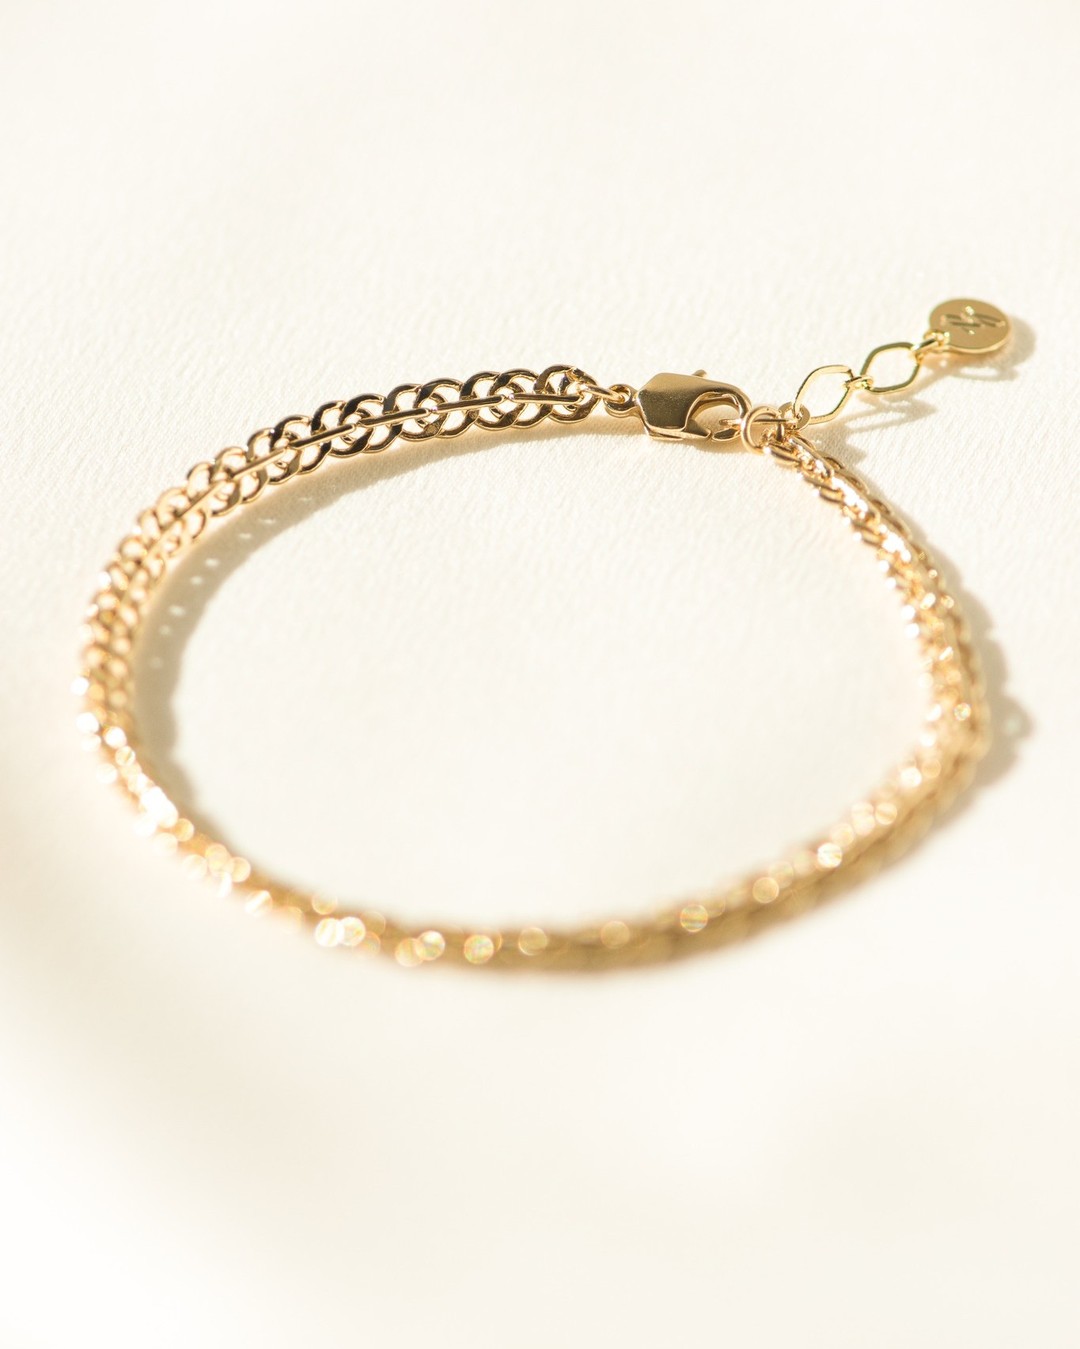 Le bracelet Xan... Sa jolie maille comme une dentelle va avec tout. 

📸@cannelle_design
 #bracelet #dentelle #madeinfrance #paysbasque #artisanat #artisanatlocal